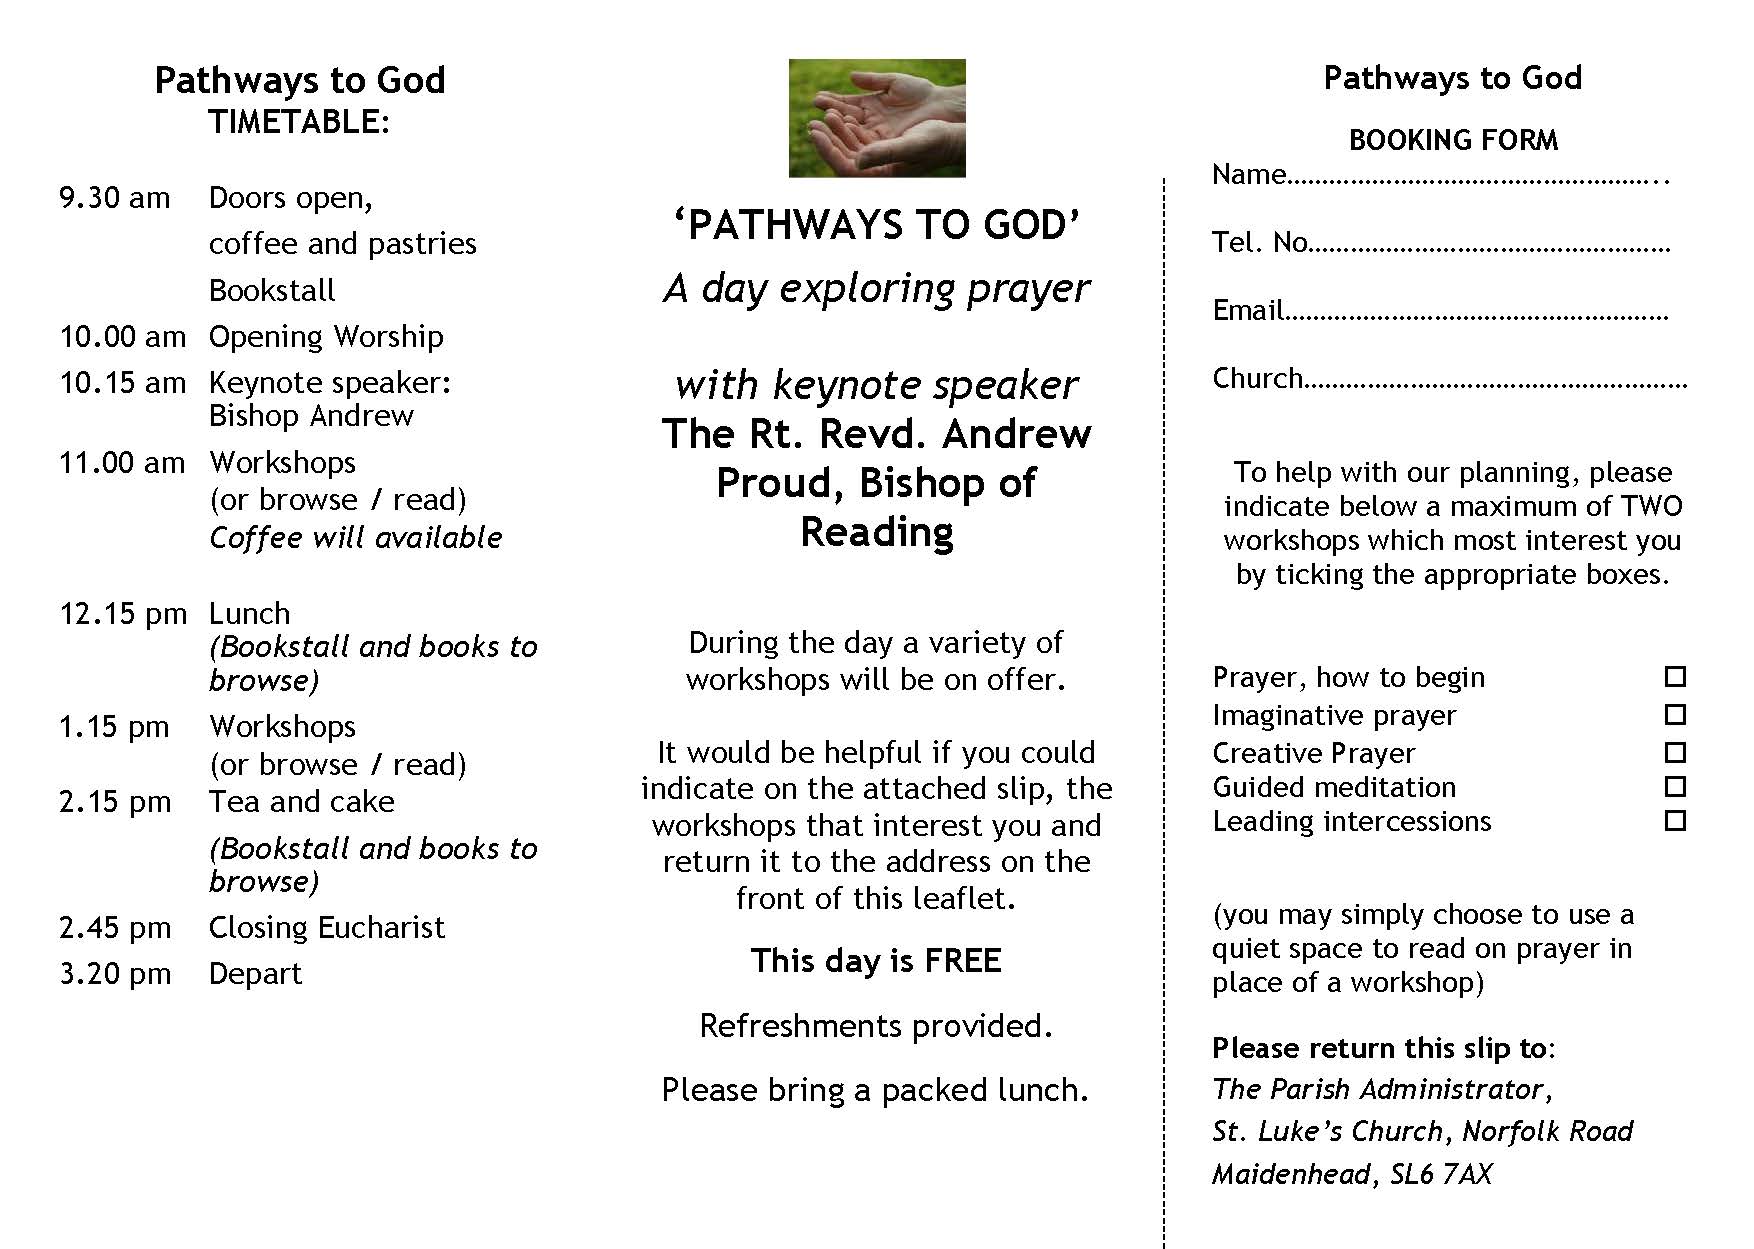 prayer day leaflet 19 image_Page_2.jpg